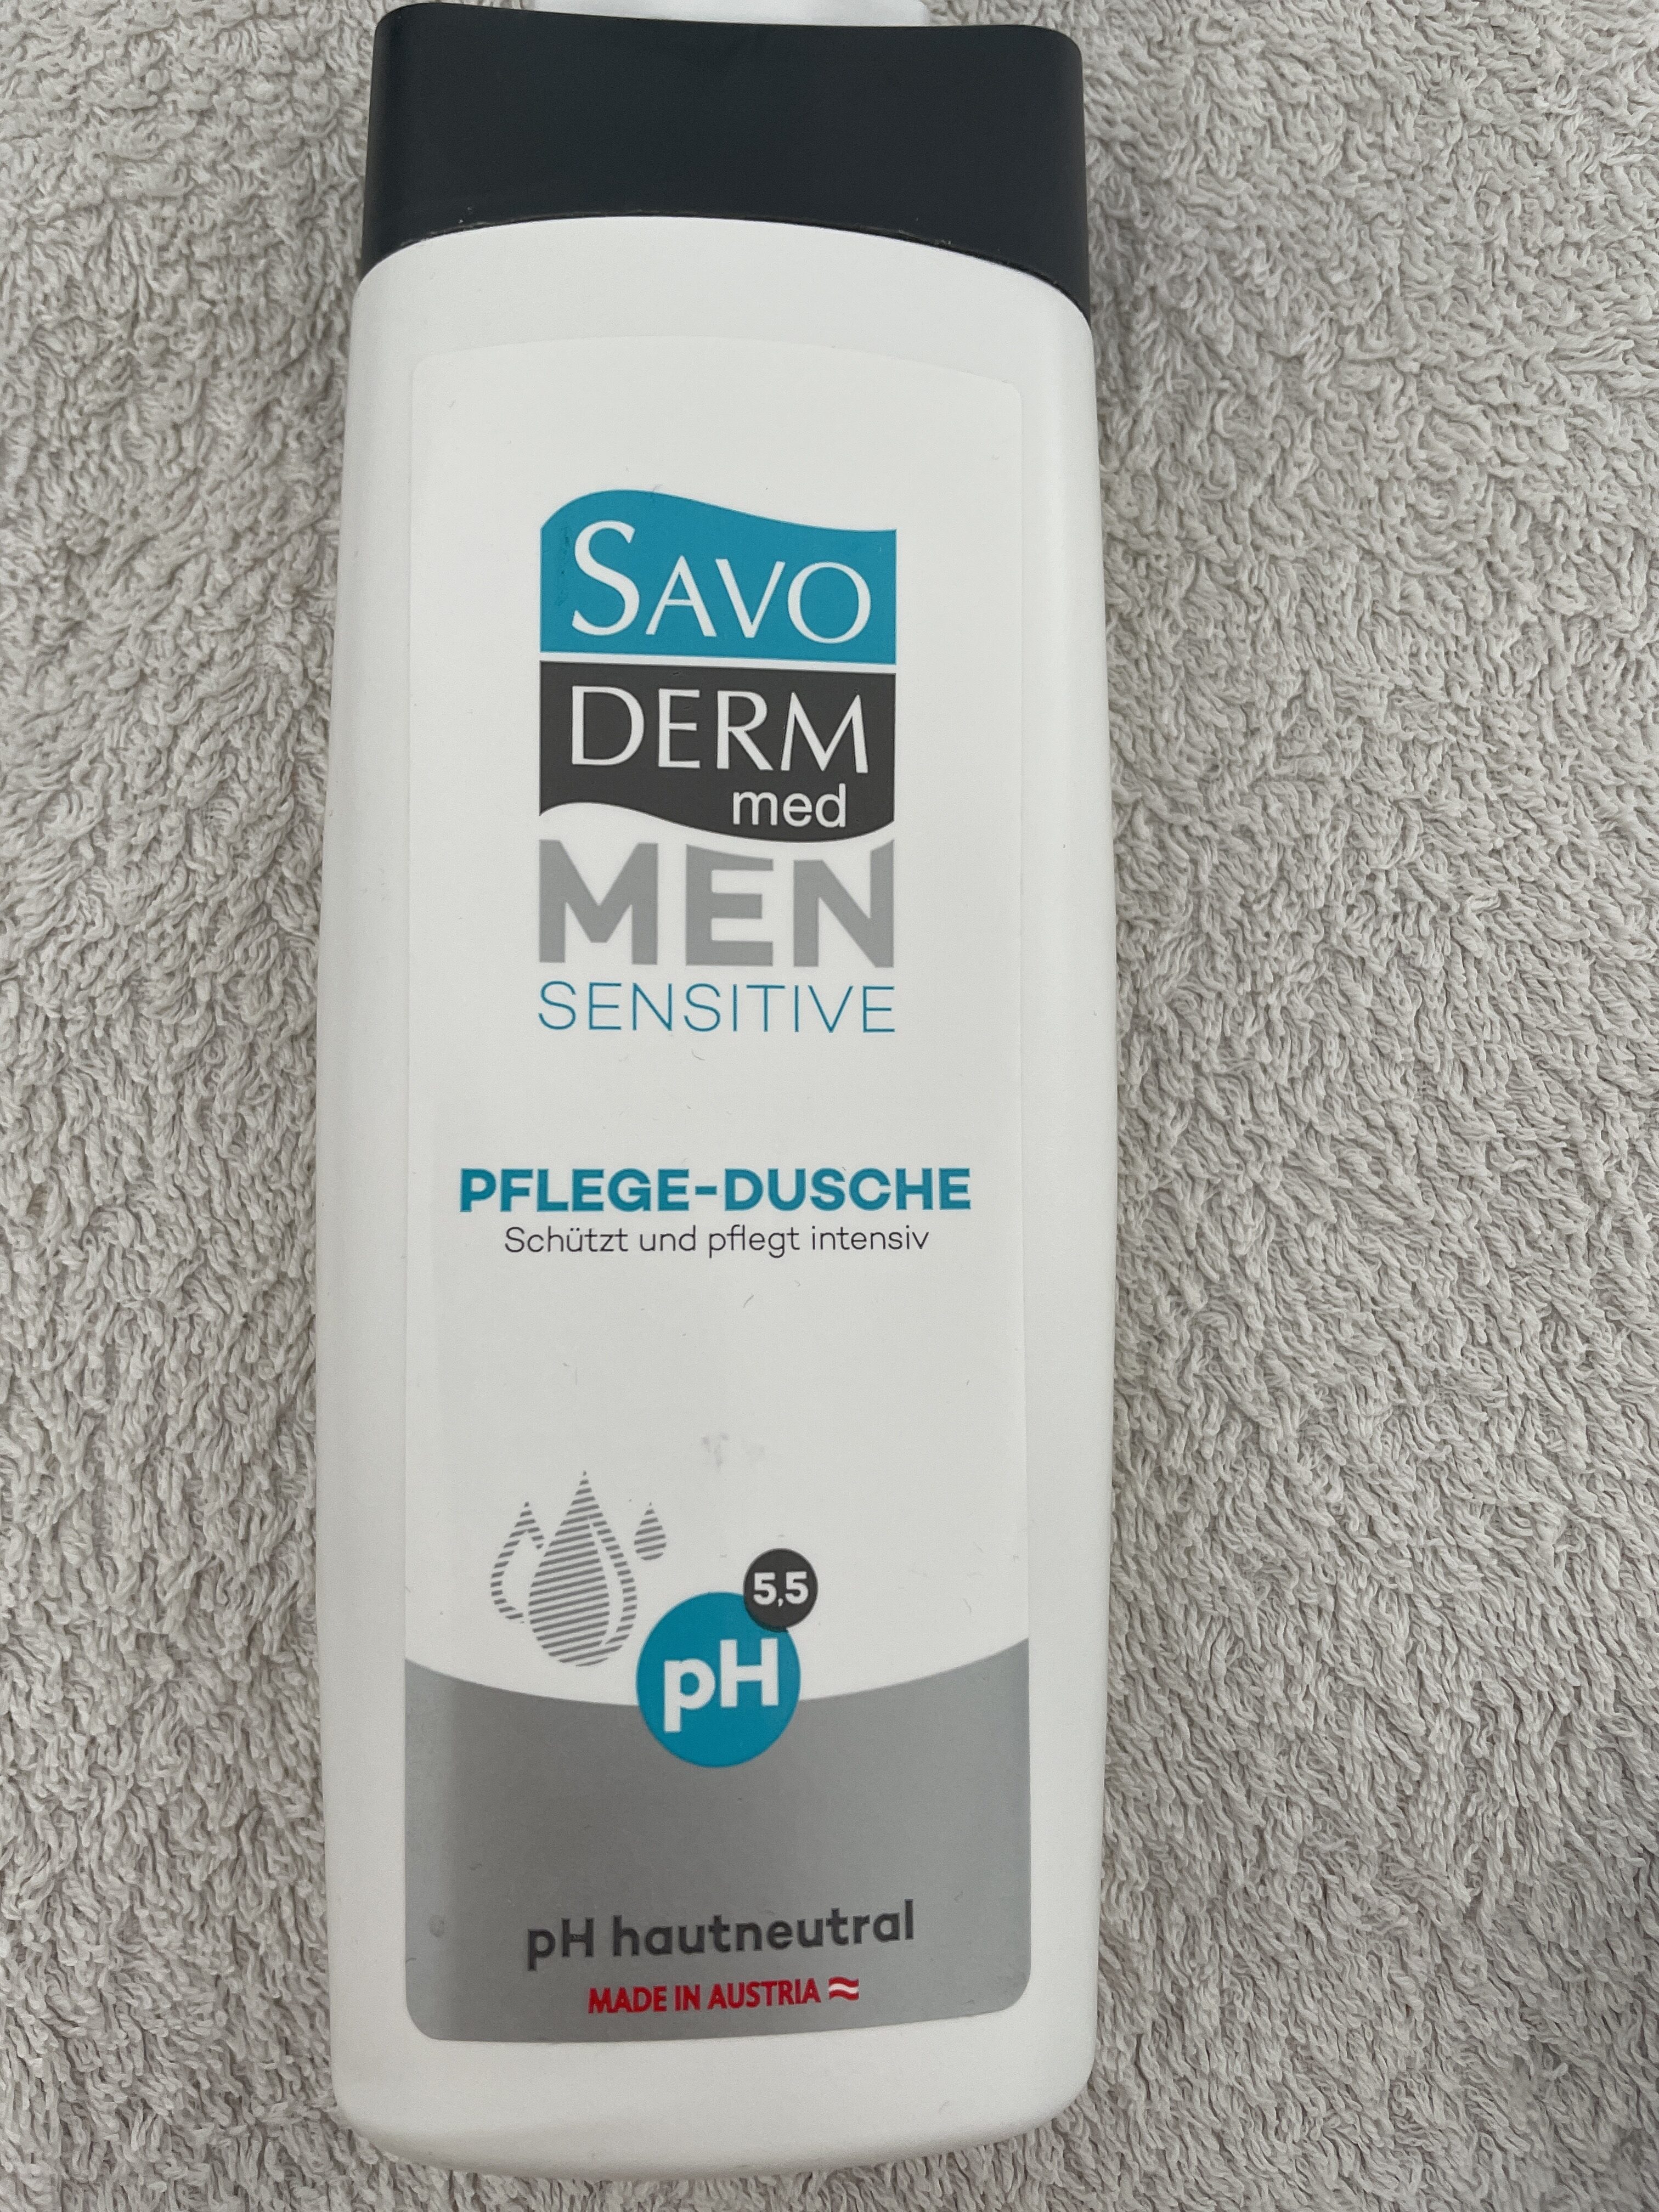 Men Sensitive Pflege-Dusche - Produit - de